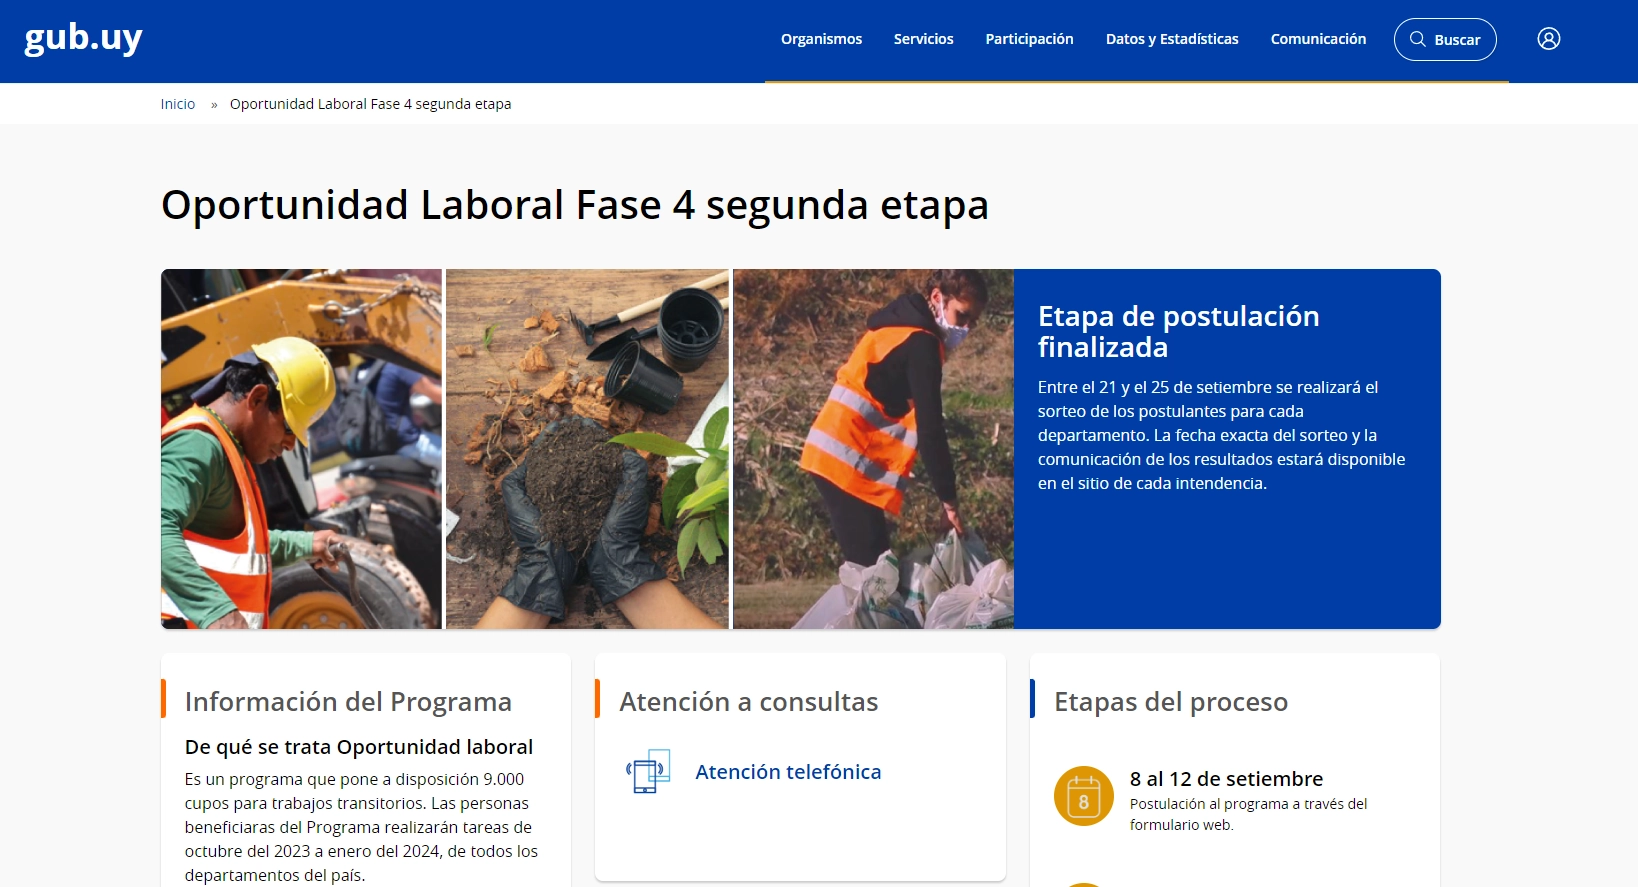 Sitio web oficial del programa Oportunidad Laboral.